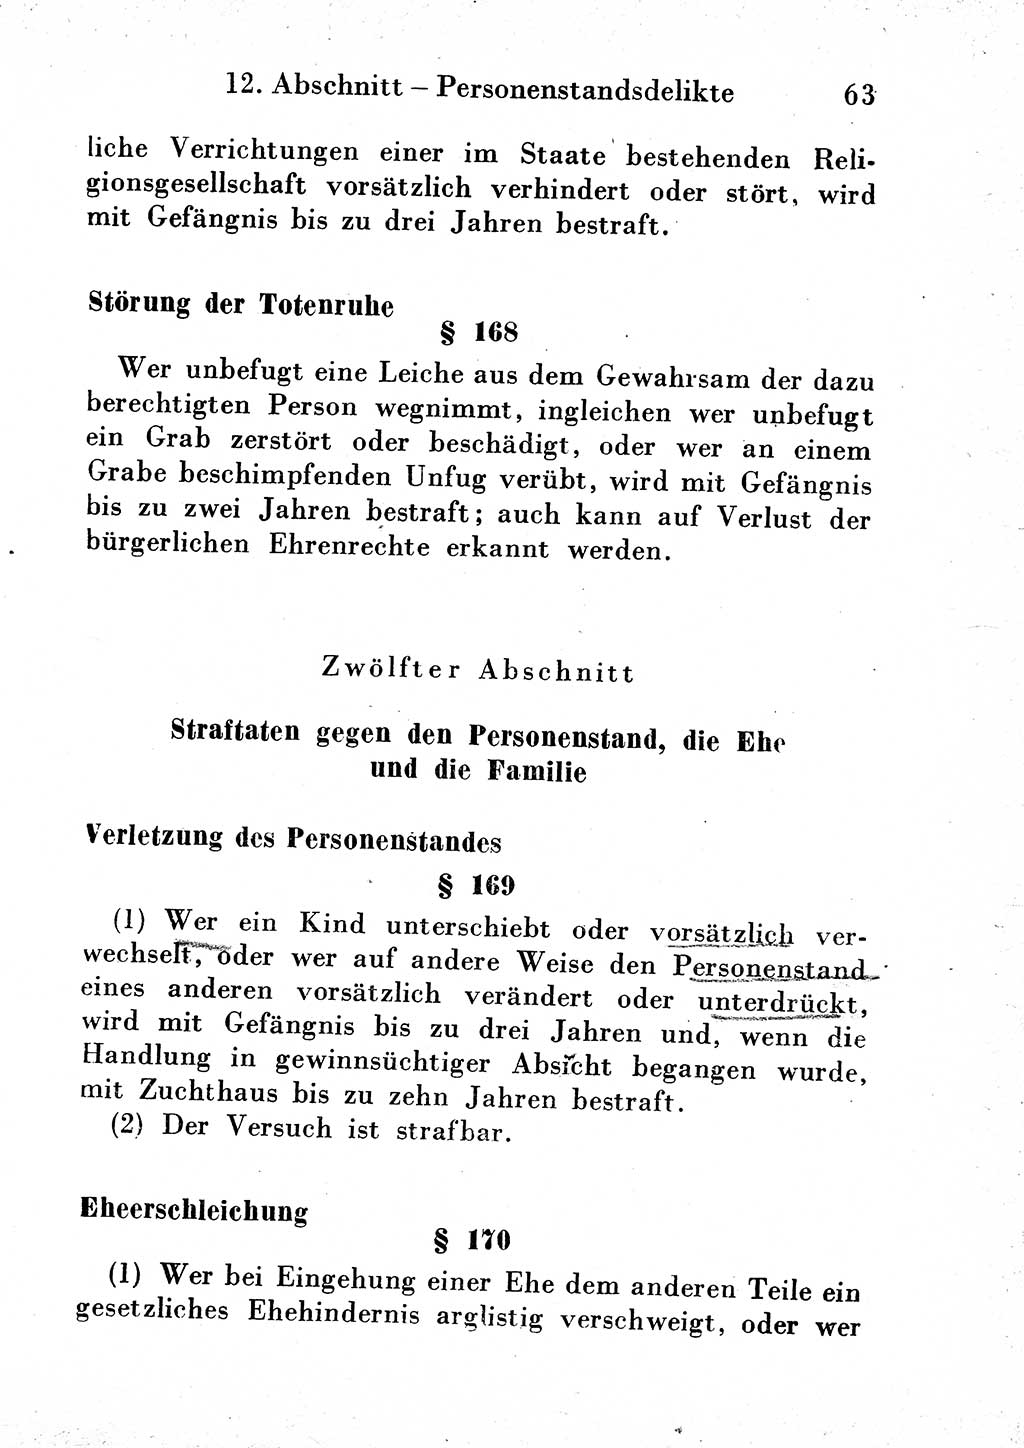 Strafgesetzbuch (StGB) und andere Strafgesetze [Deutsche Demokratische Republik (DDR)] 1954, Seite 63 (StGB Strafges. DDR 1954, S. 63)